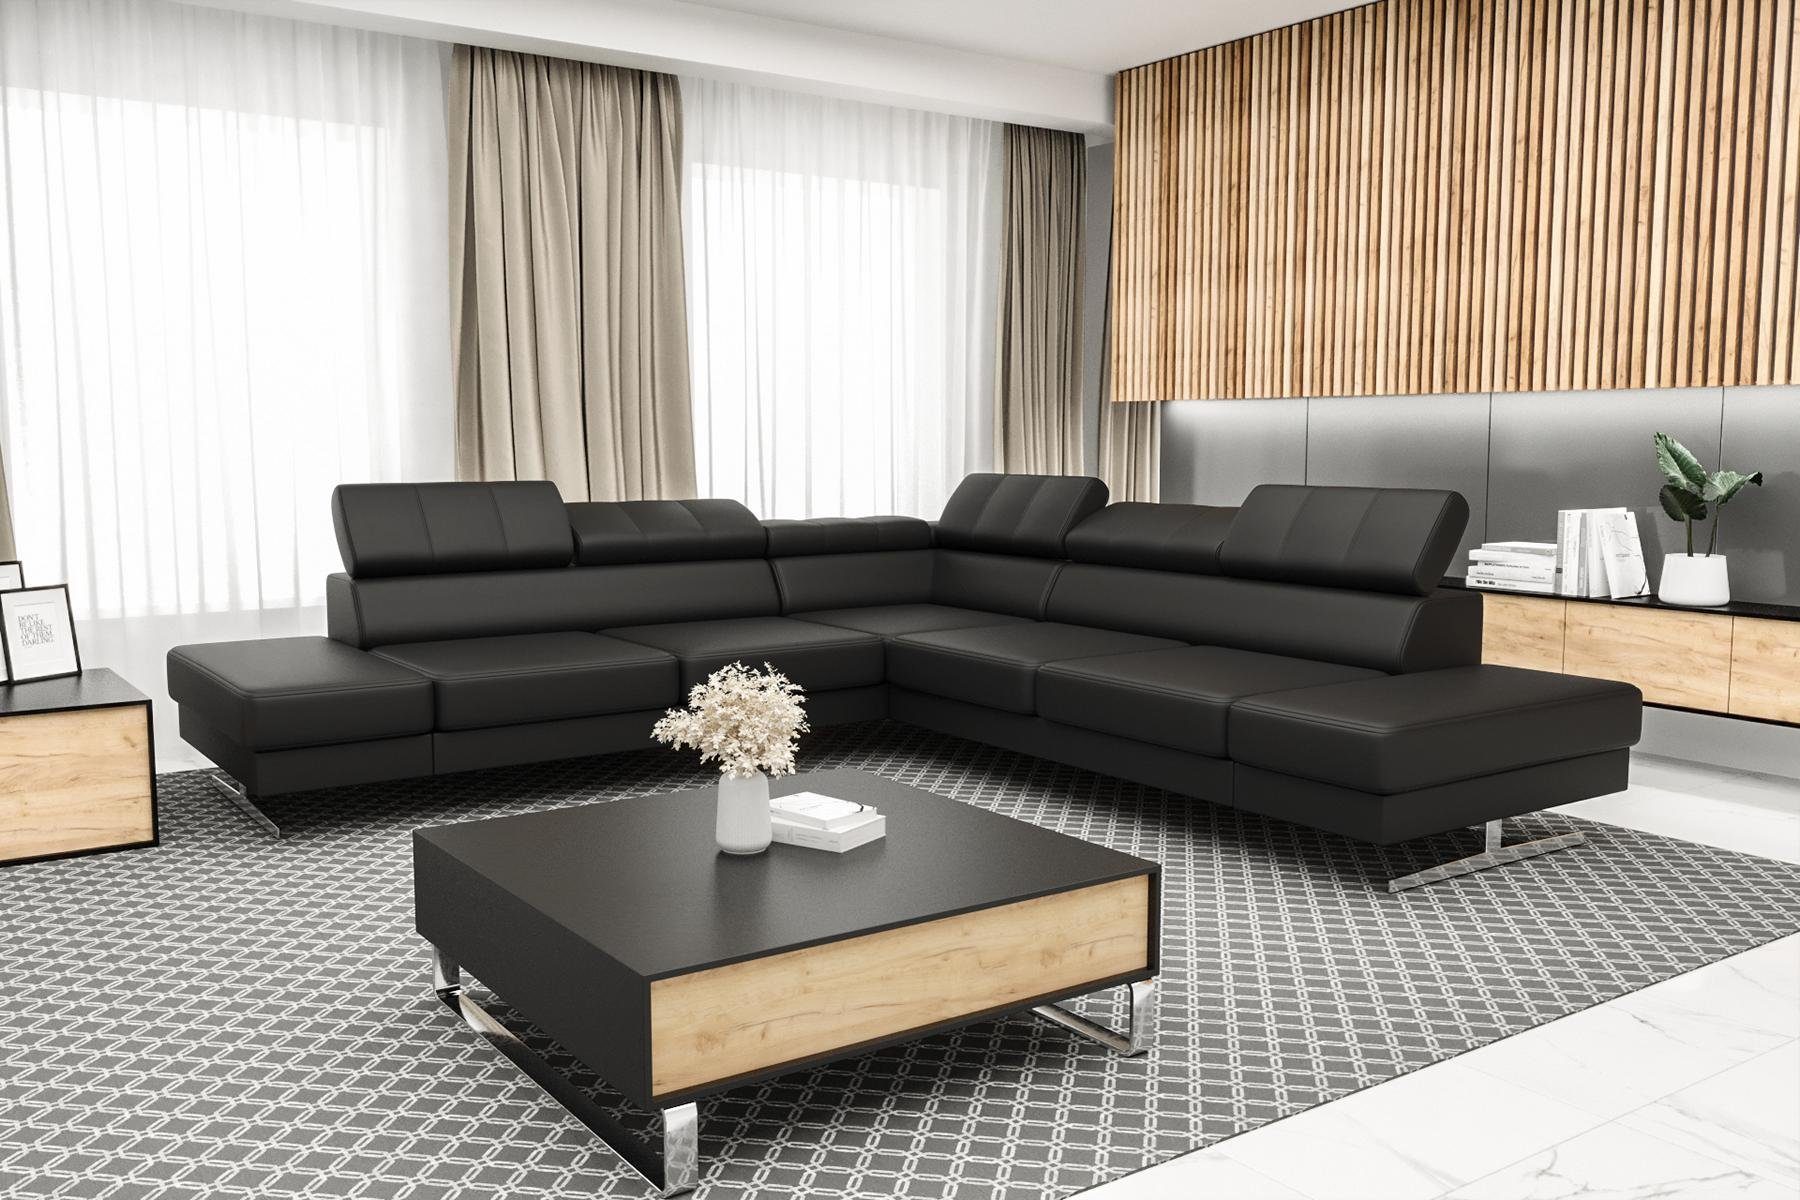 JVmoebel Ecksofa Designer Schwarzes in Europe Luxus Sofa Textil, Wohnzimmer L-Form Made Couch